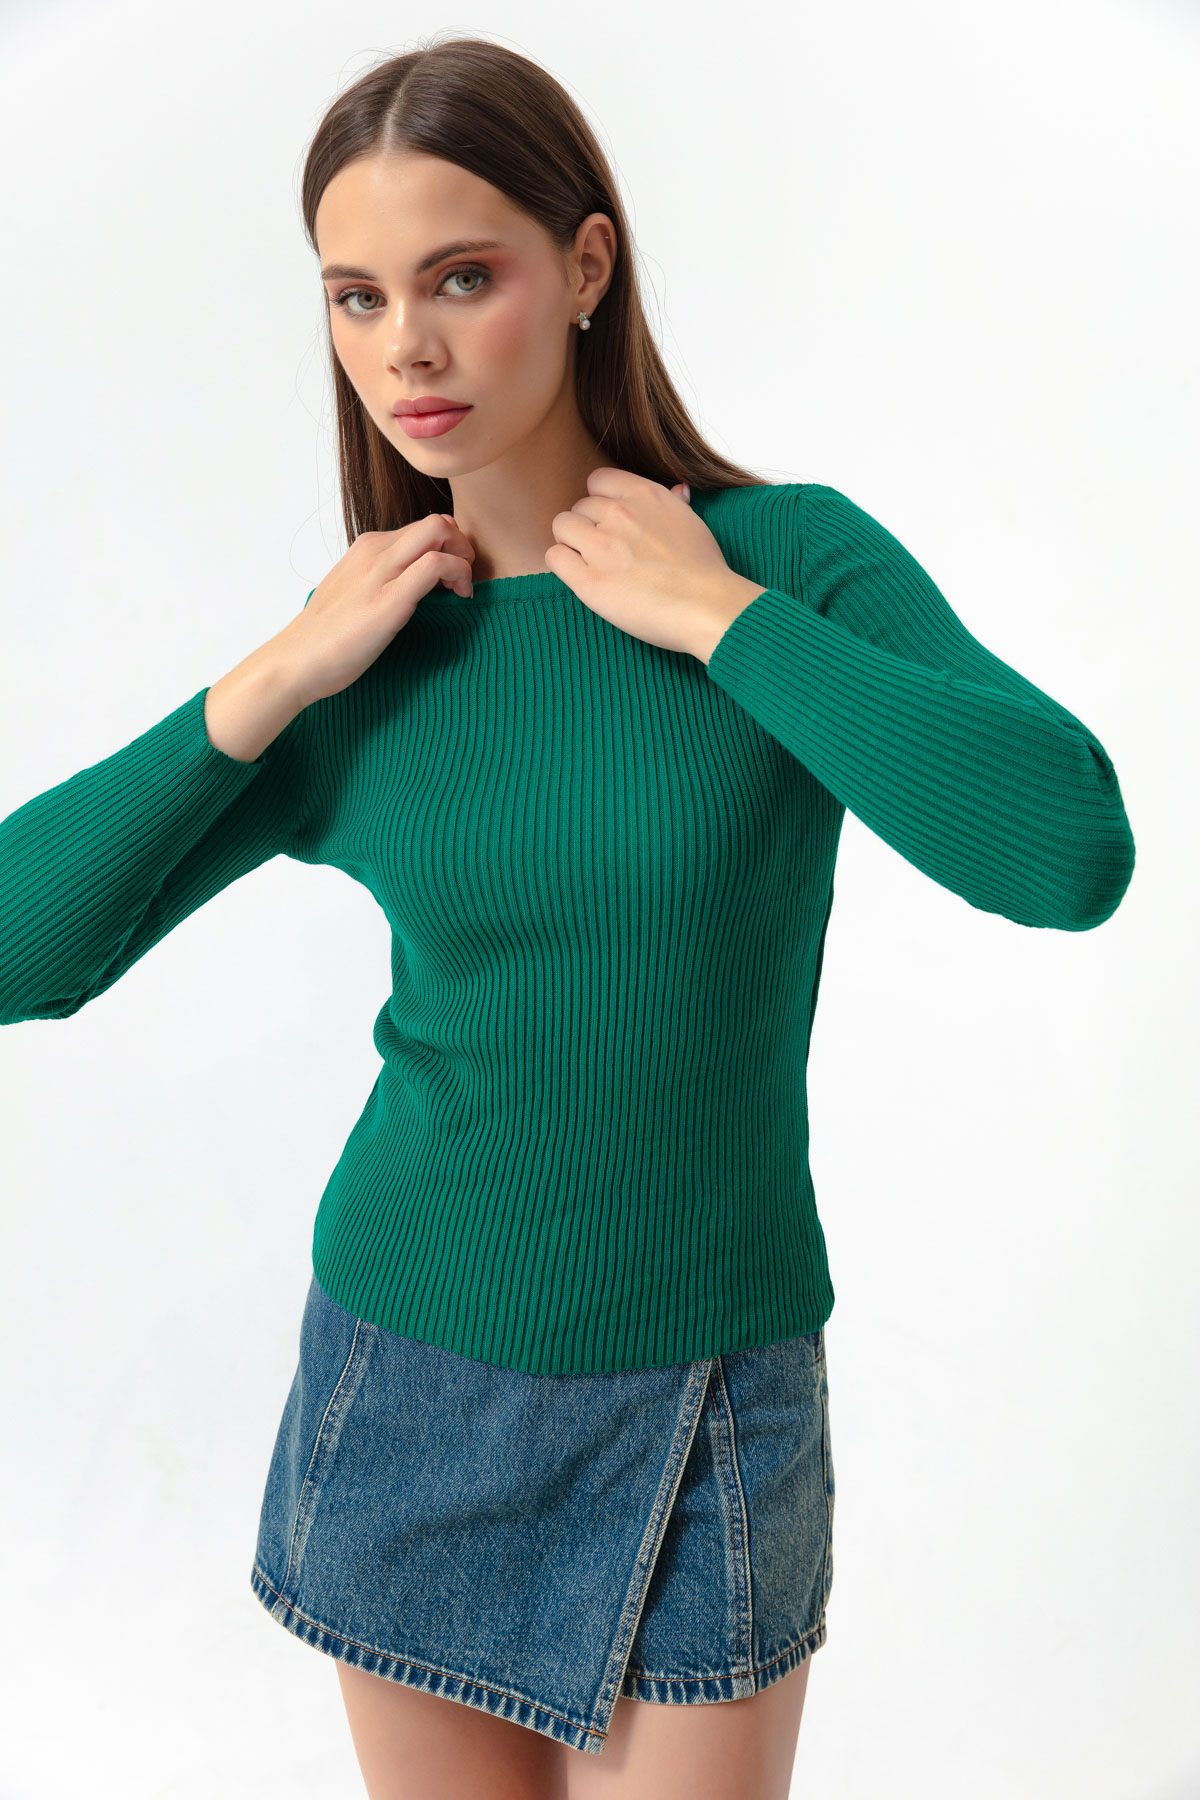 Women's Emerald Green Crew Neck Knitwear Sweater